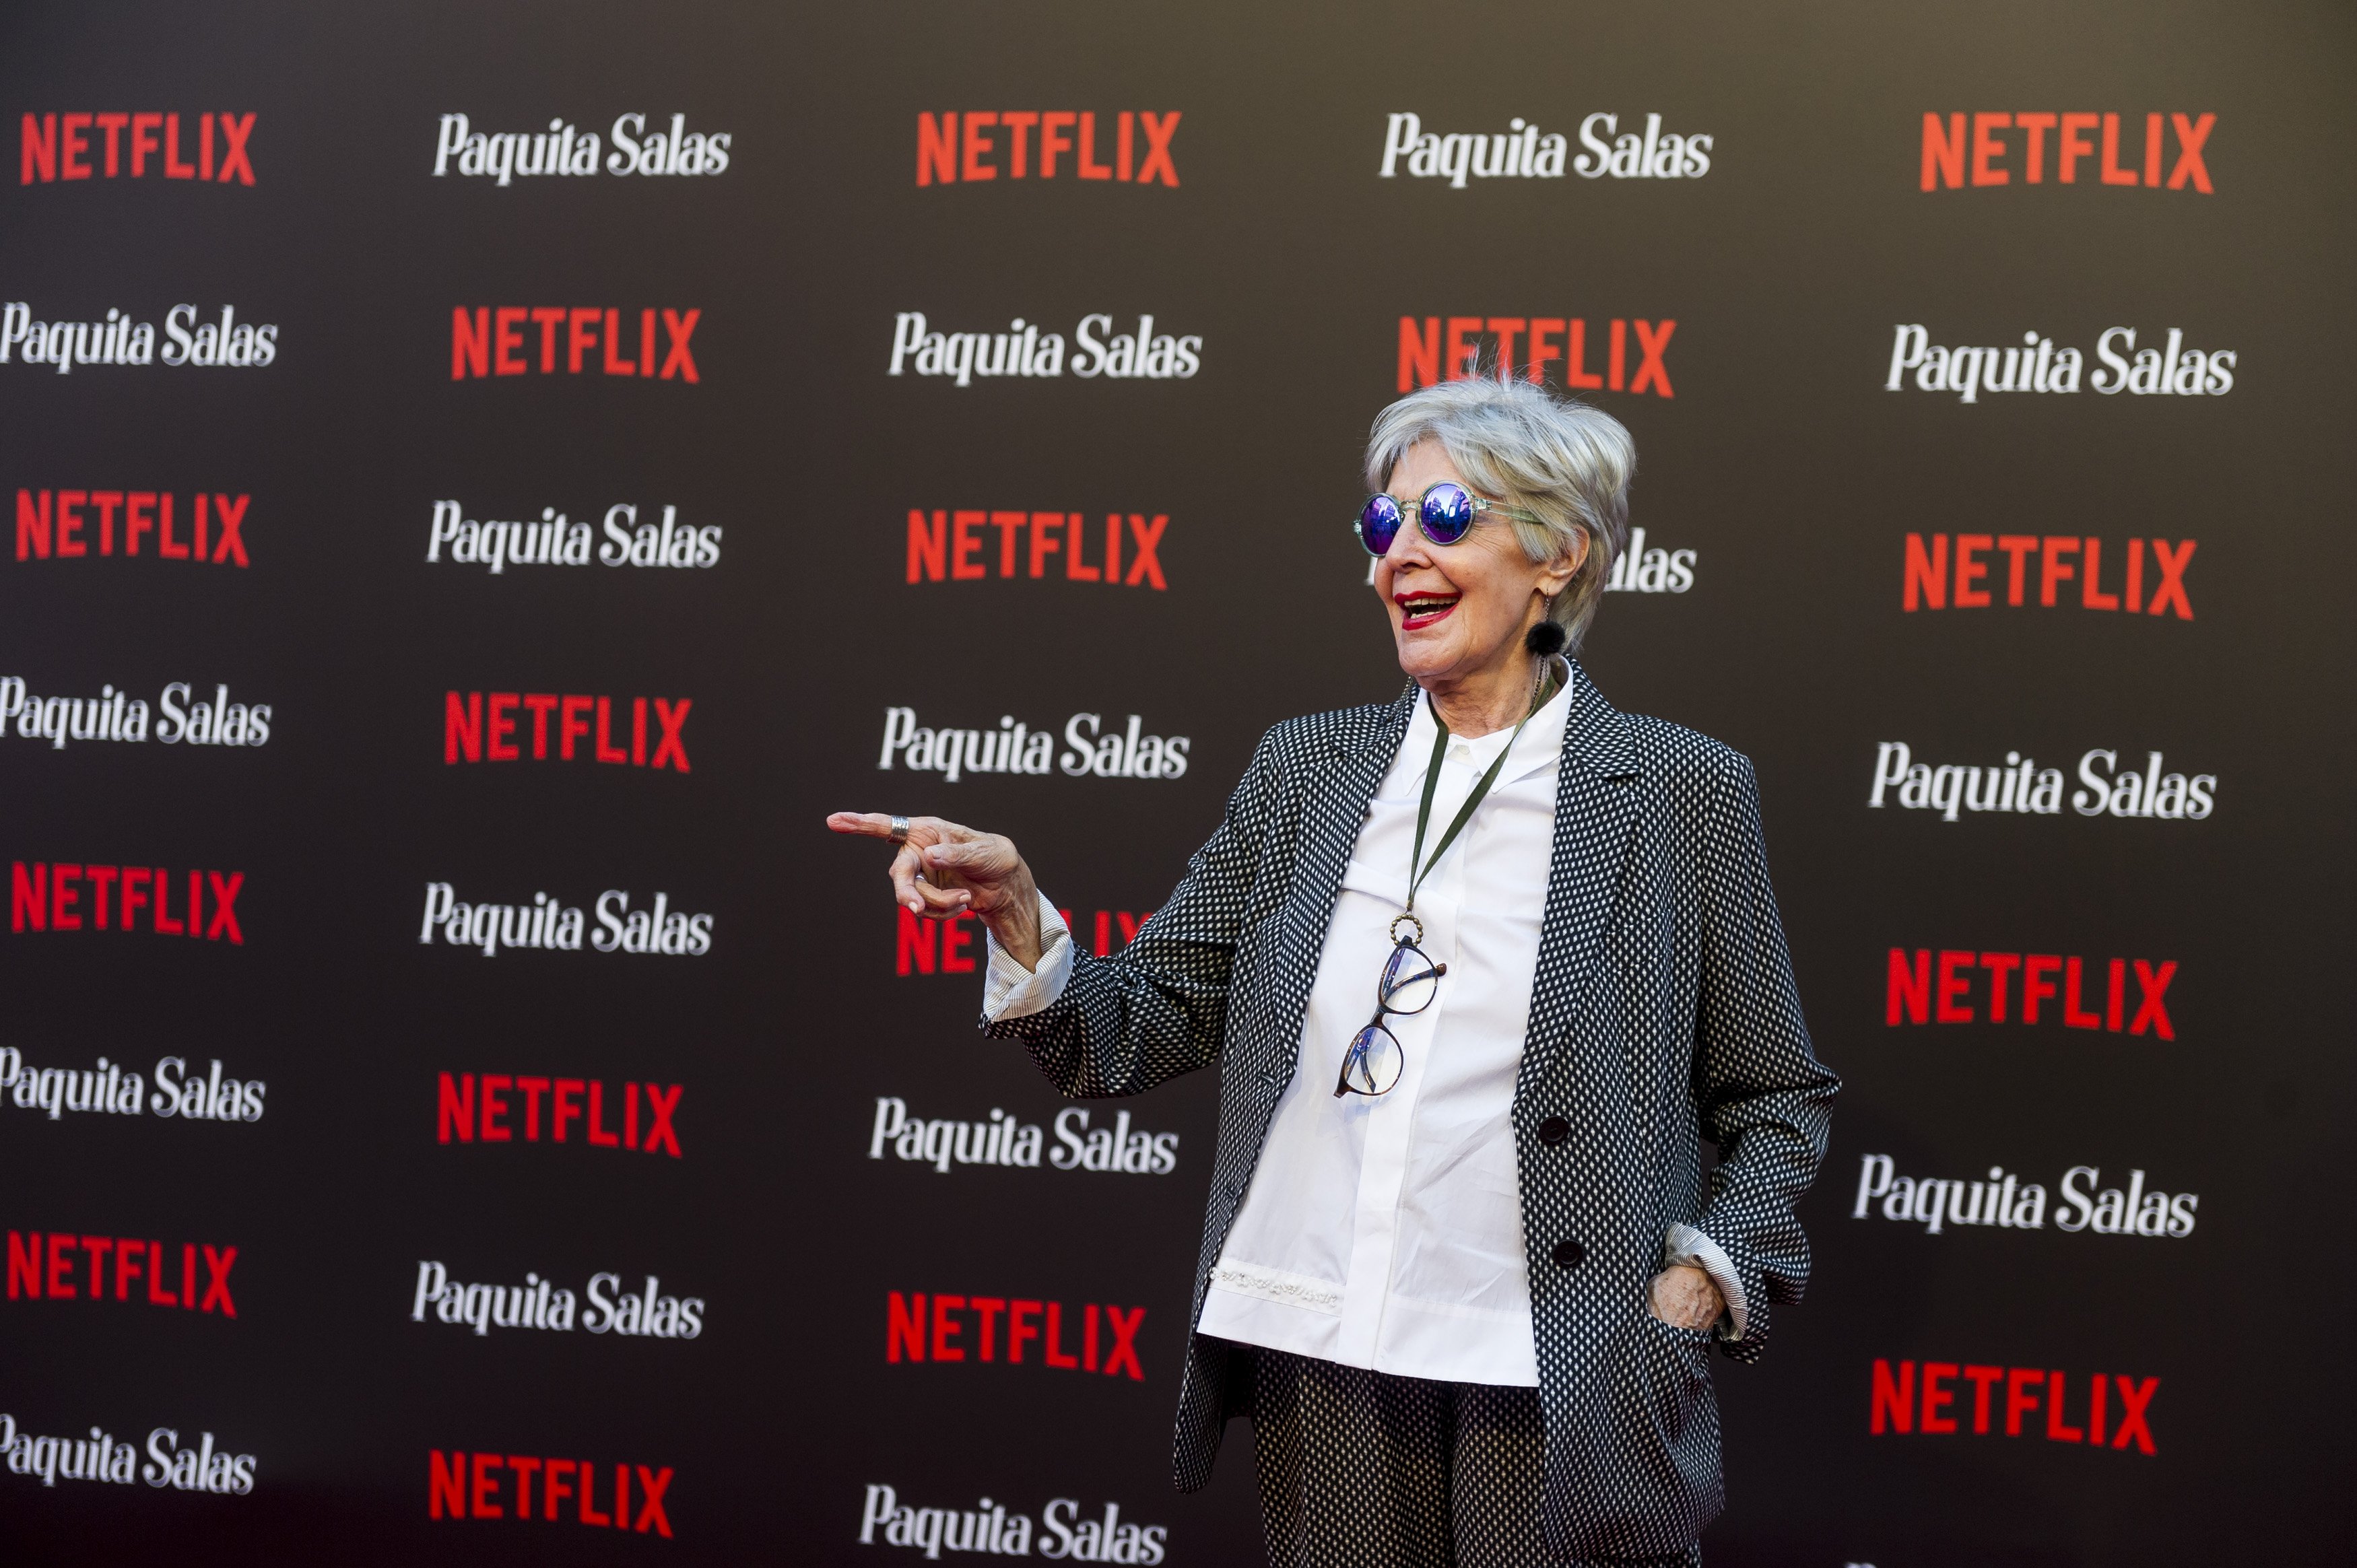 Concha Velasco en el estreno mundial de la serie de Netflix "Paquita Salas: Temporada 2" el 28 de junio de 2018 en Madrid, España || Fuente: Getty Images